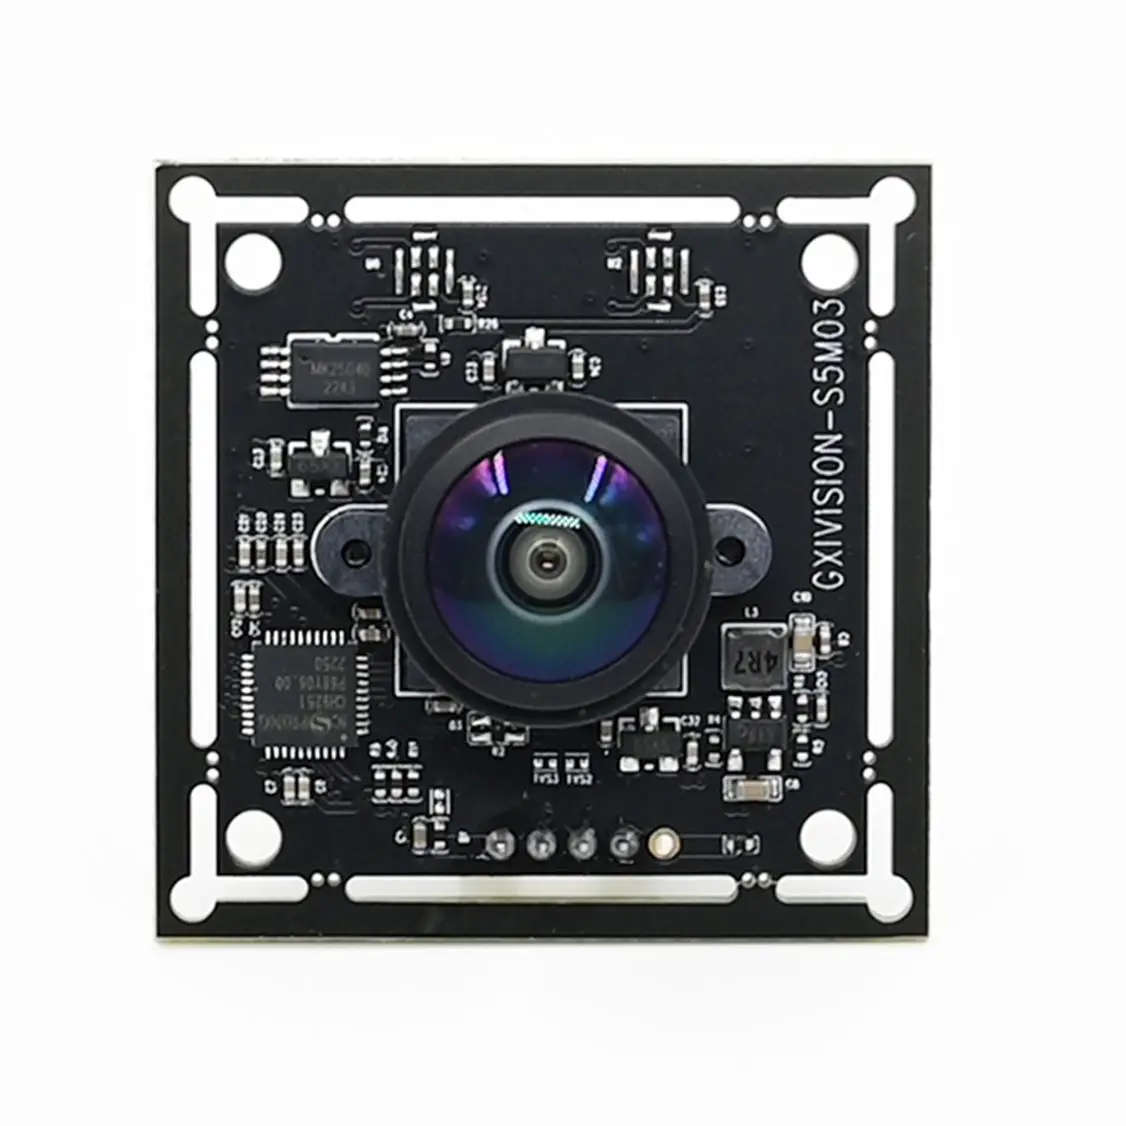 5MP moduł kamery USB OV5693 30FPS 5-megapikselowa kamera internetowa 2592x194 stała gęstość wiązki M12 obiektyw do laptopa Android Raspberry Pi